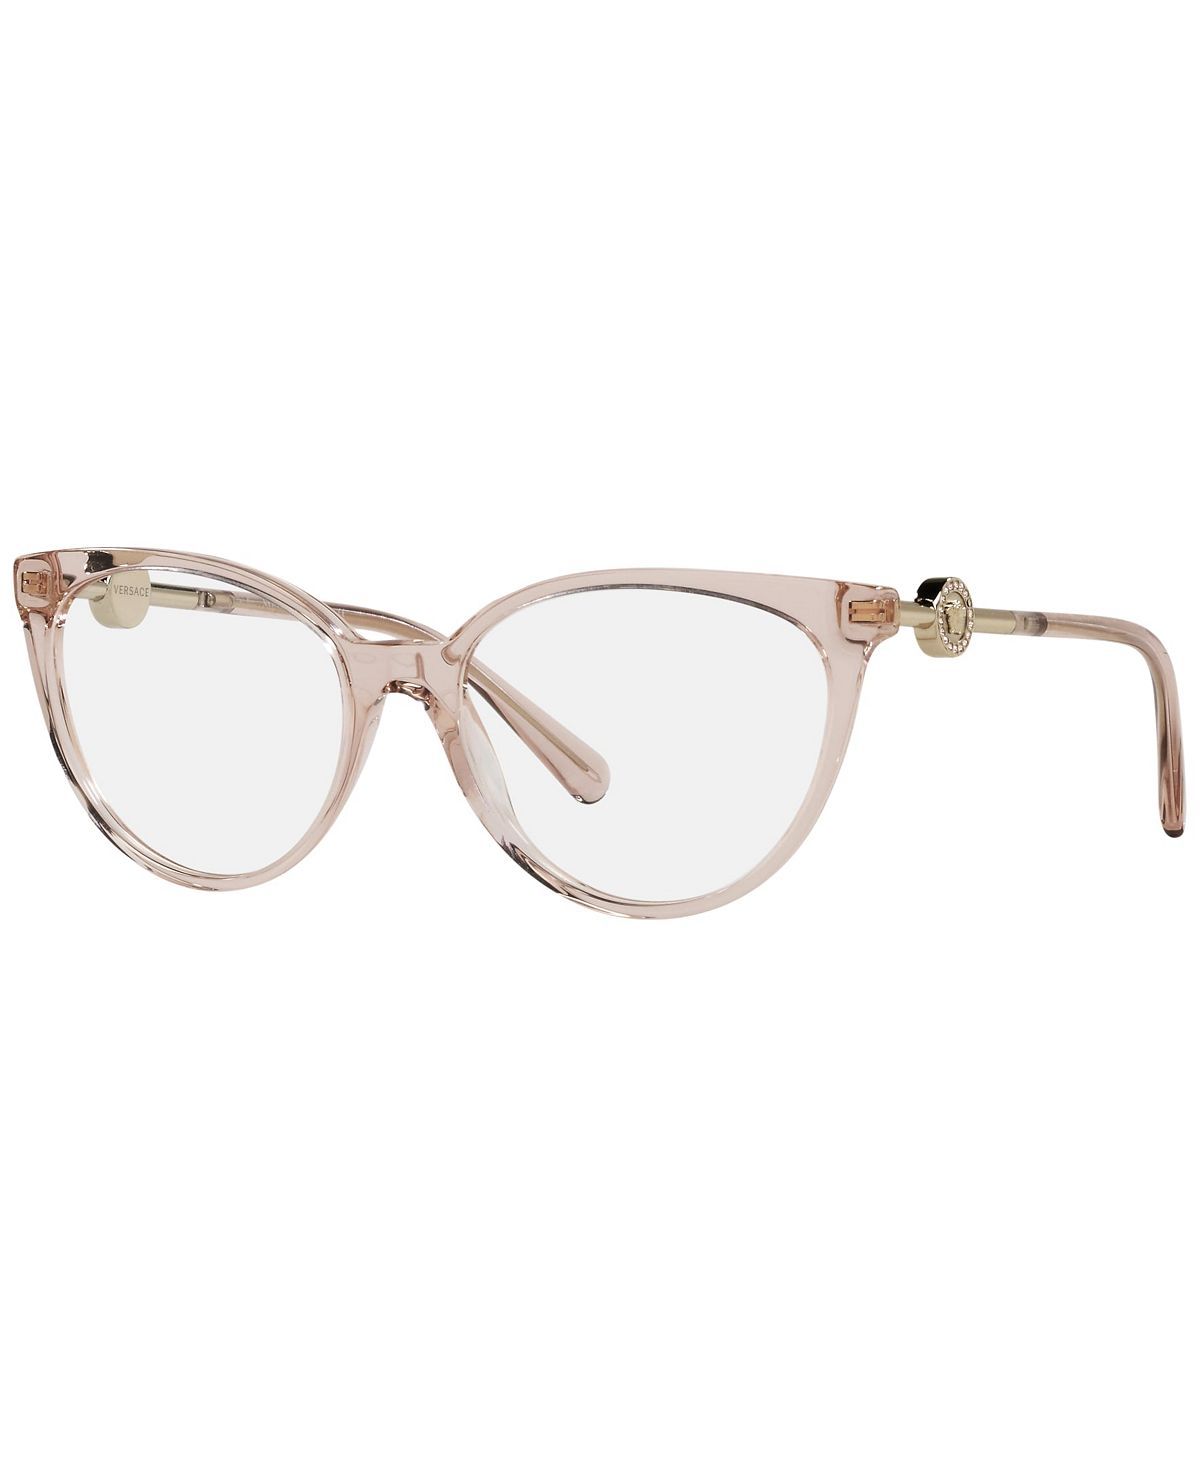 Женские очки Phantos, VE3298B55-O Versace, розовый